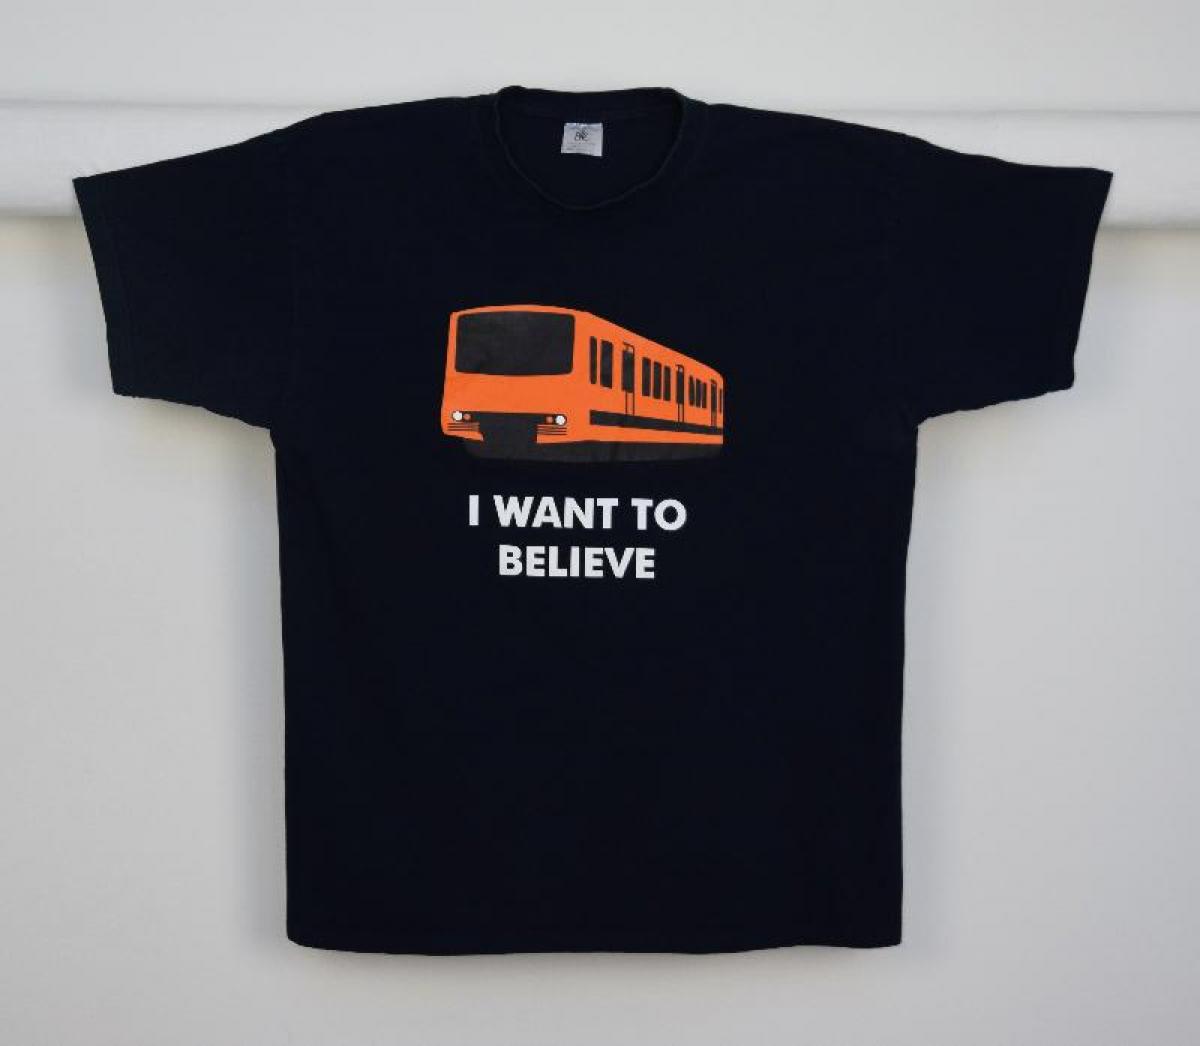 Svart t-tröja med bild av metrotåg och text "I WANT TO BELIEVE"